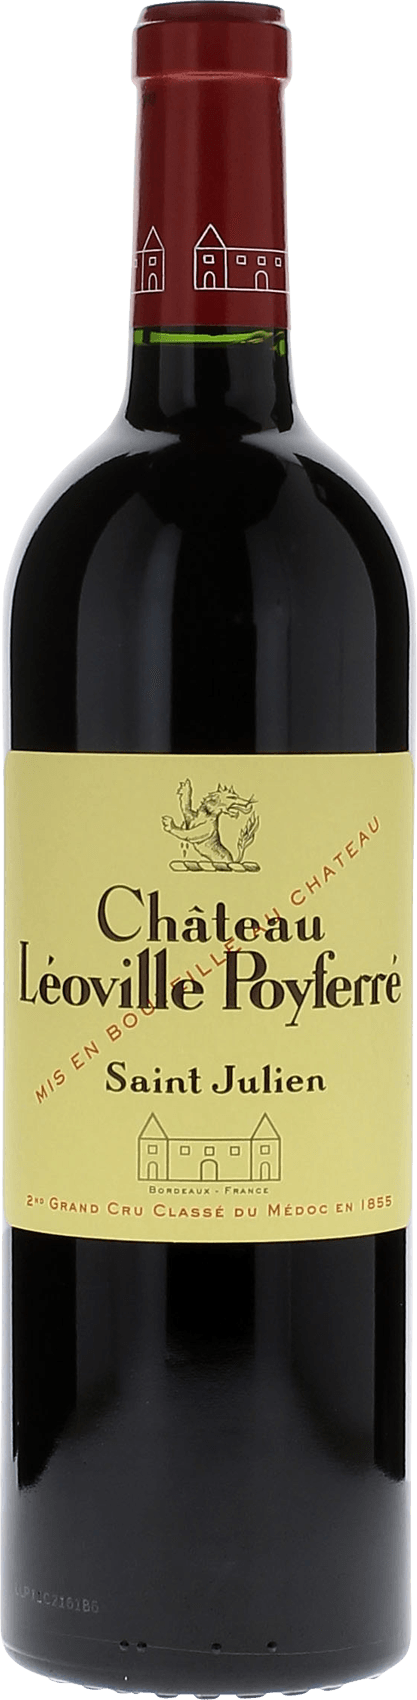 Leoville poyferre 1991 2me Grand cru class Saint-Julien, Bordeaux rouge